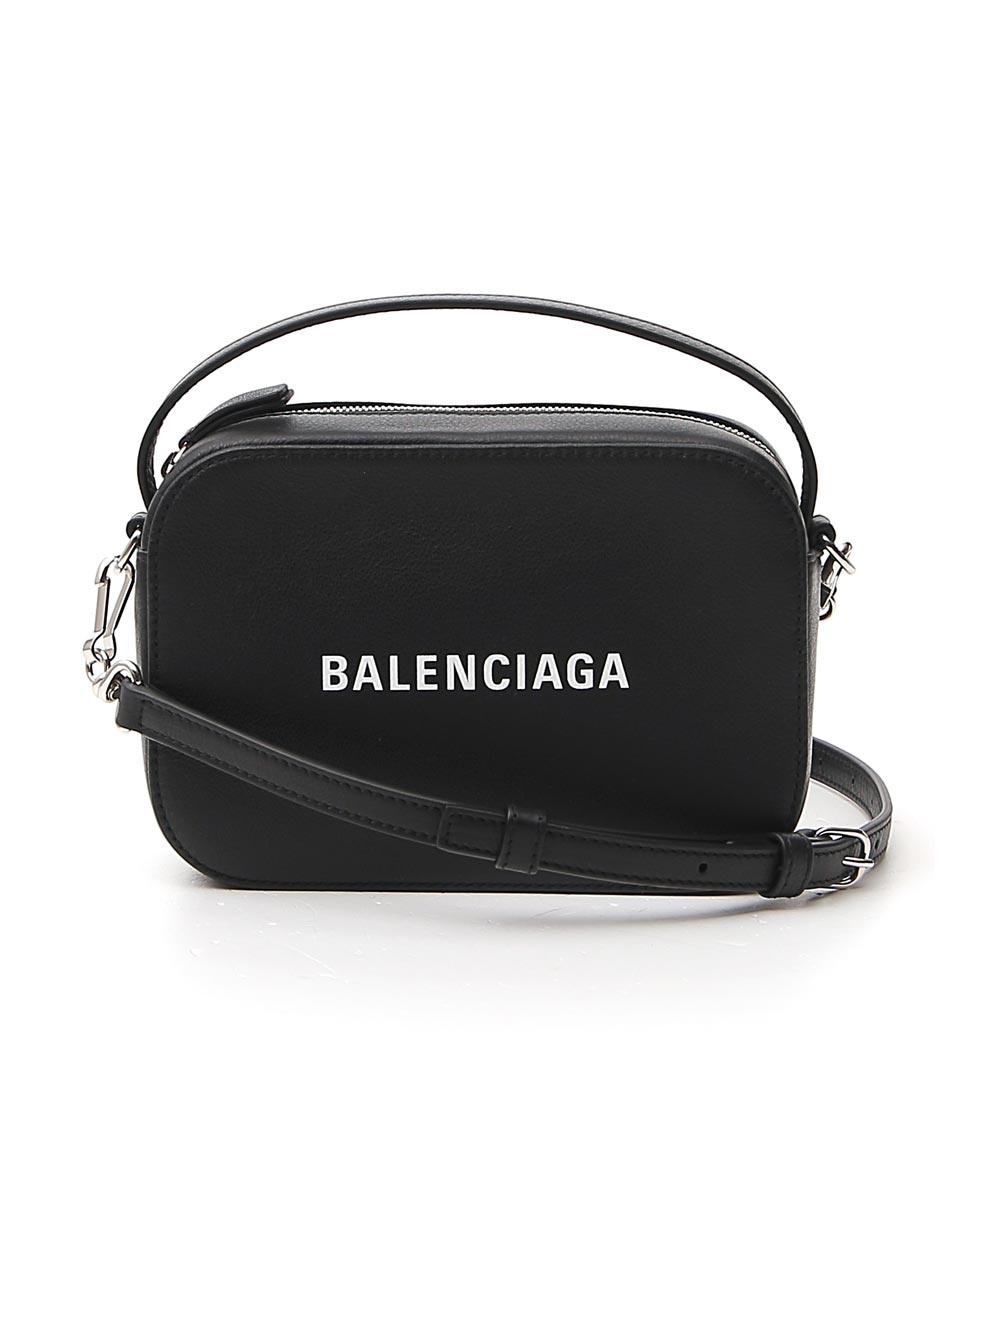 Balenciaga Leather Everyday Xs Logo Camera Bag in Black - Lyst